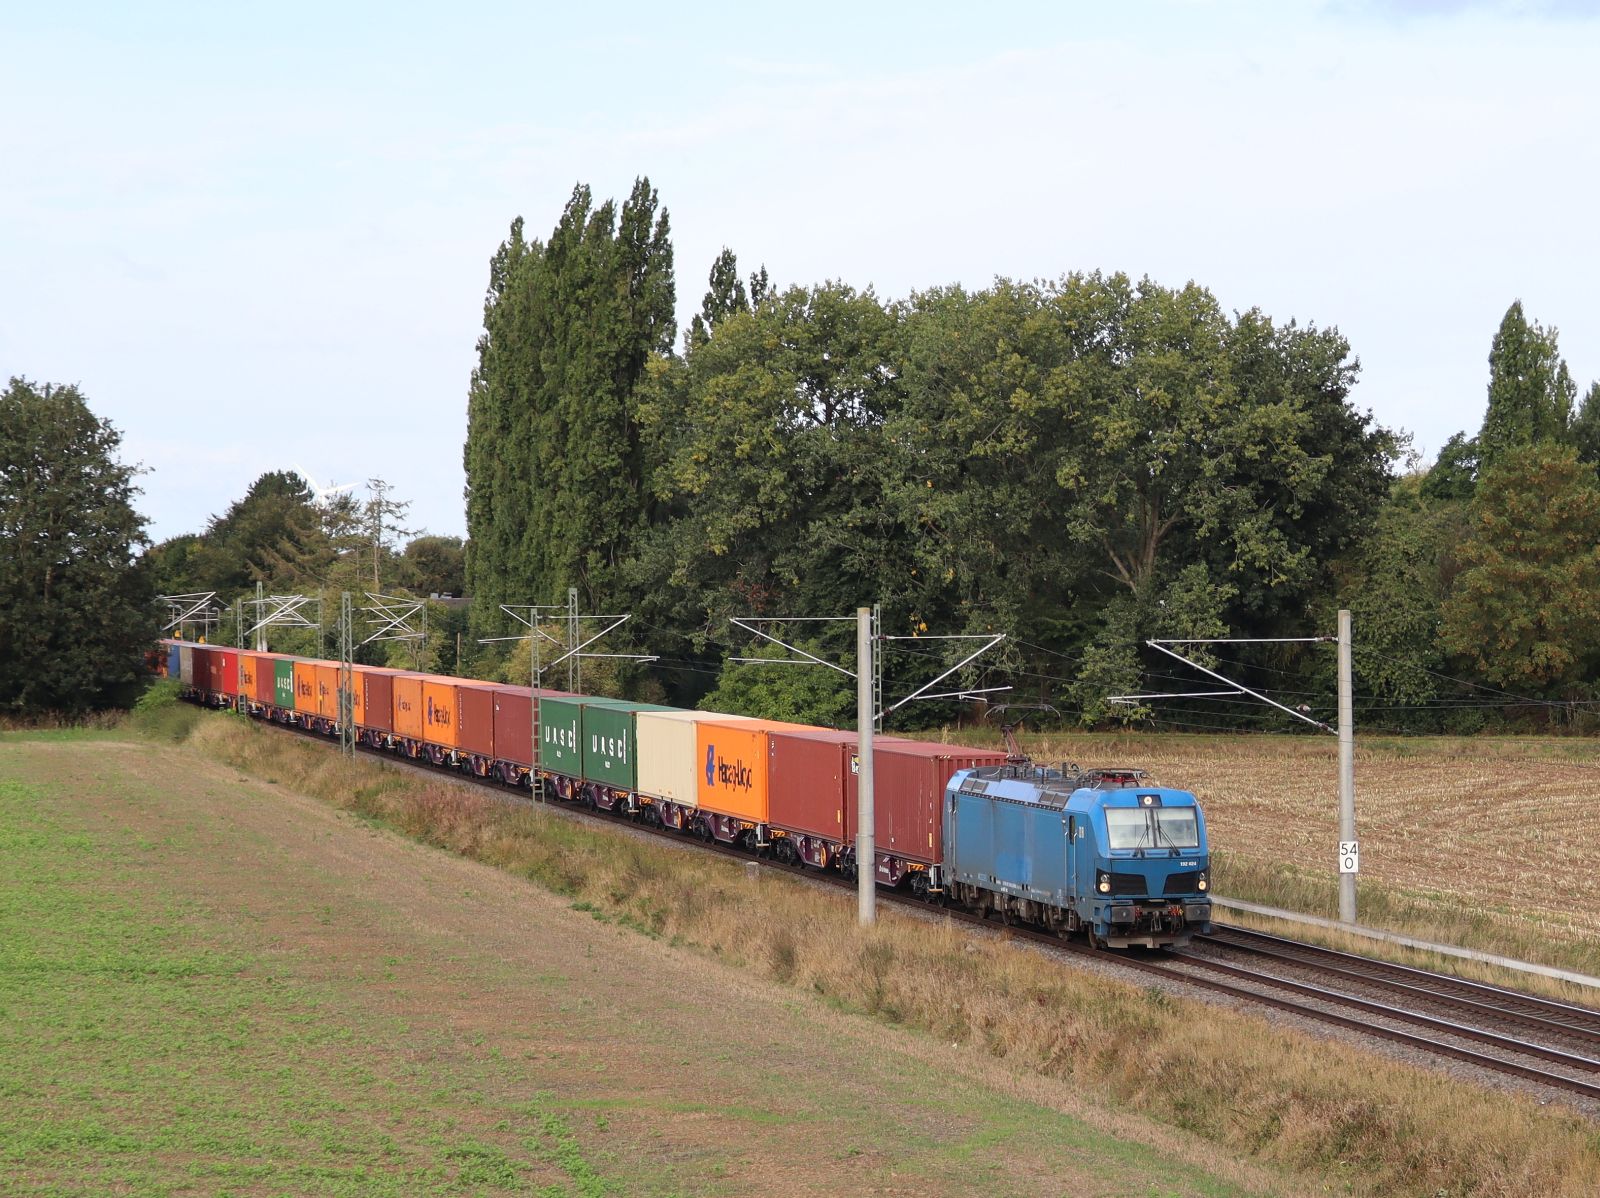 Delta Rail Lokomotive 192 024-8 (91 80 6192 024-8 D-NRAIL) Baumannstrasse, Praest 16-09-2022.

Delta Rail locomotief 192 024-8 (91 80 6192 024-8 D-NRAIL) Baumannstrasse, Praest 16-09-2022.